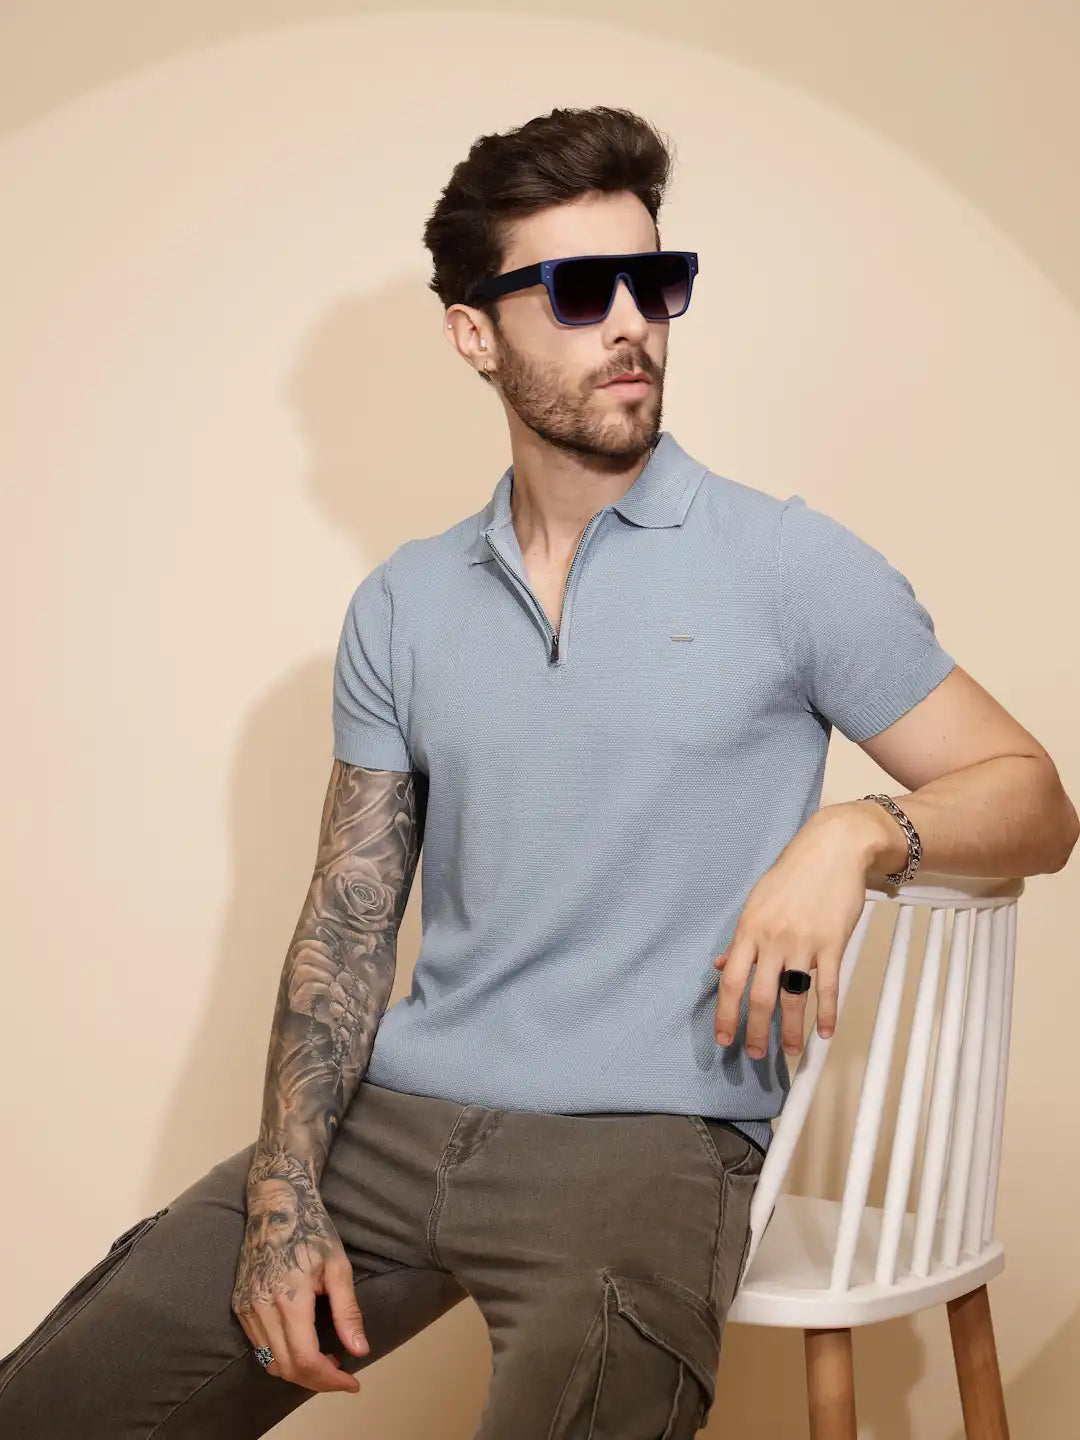 Blue Viscose Blend Regular Fit T-Shirt For Men